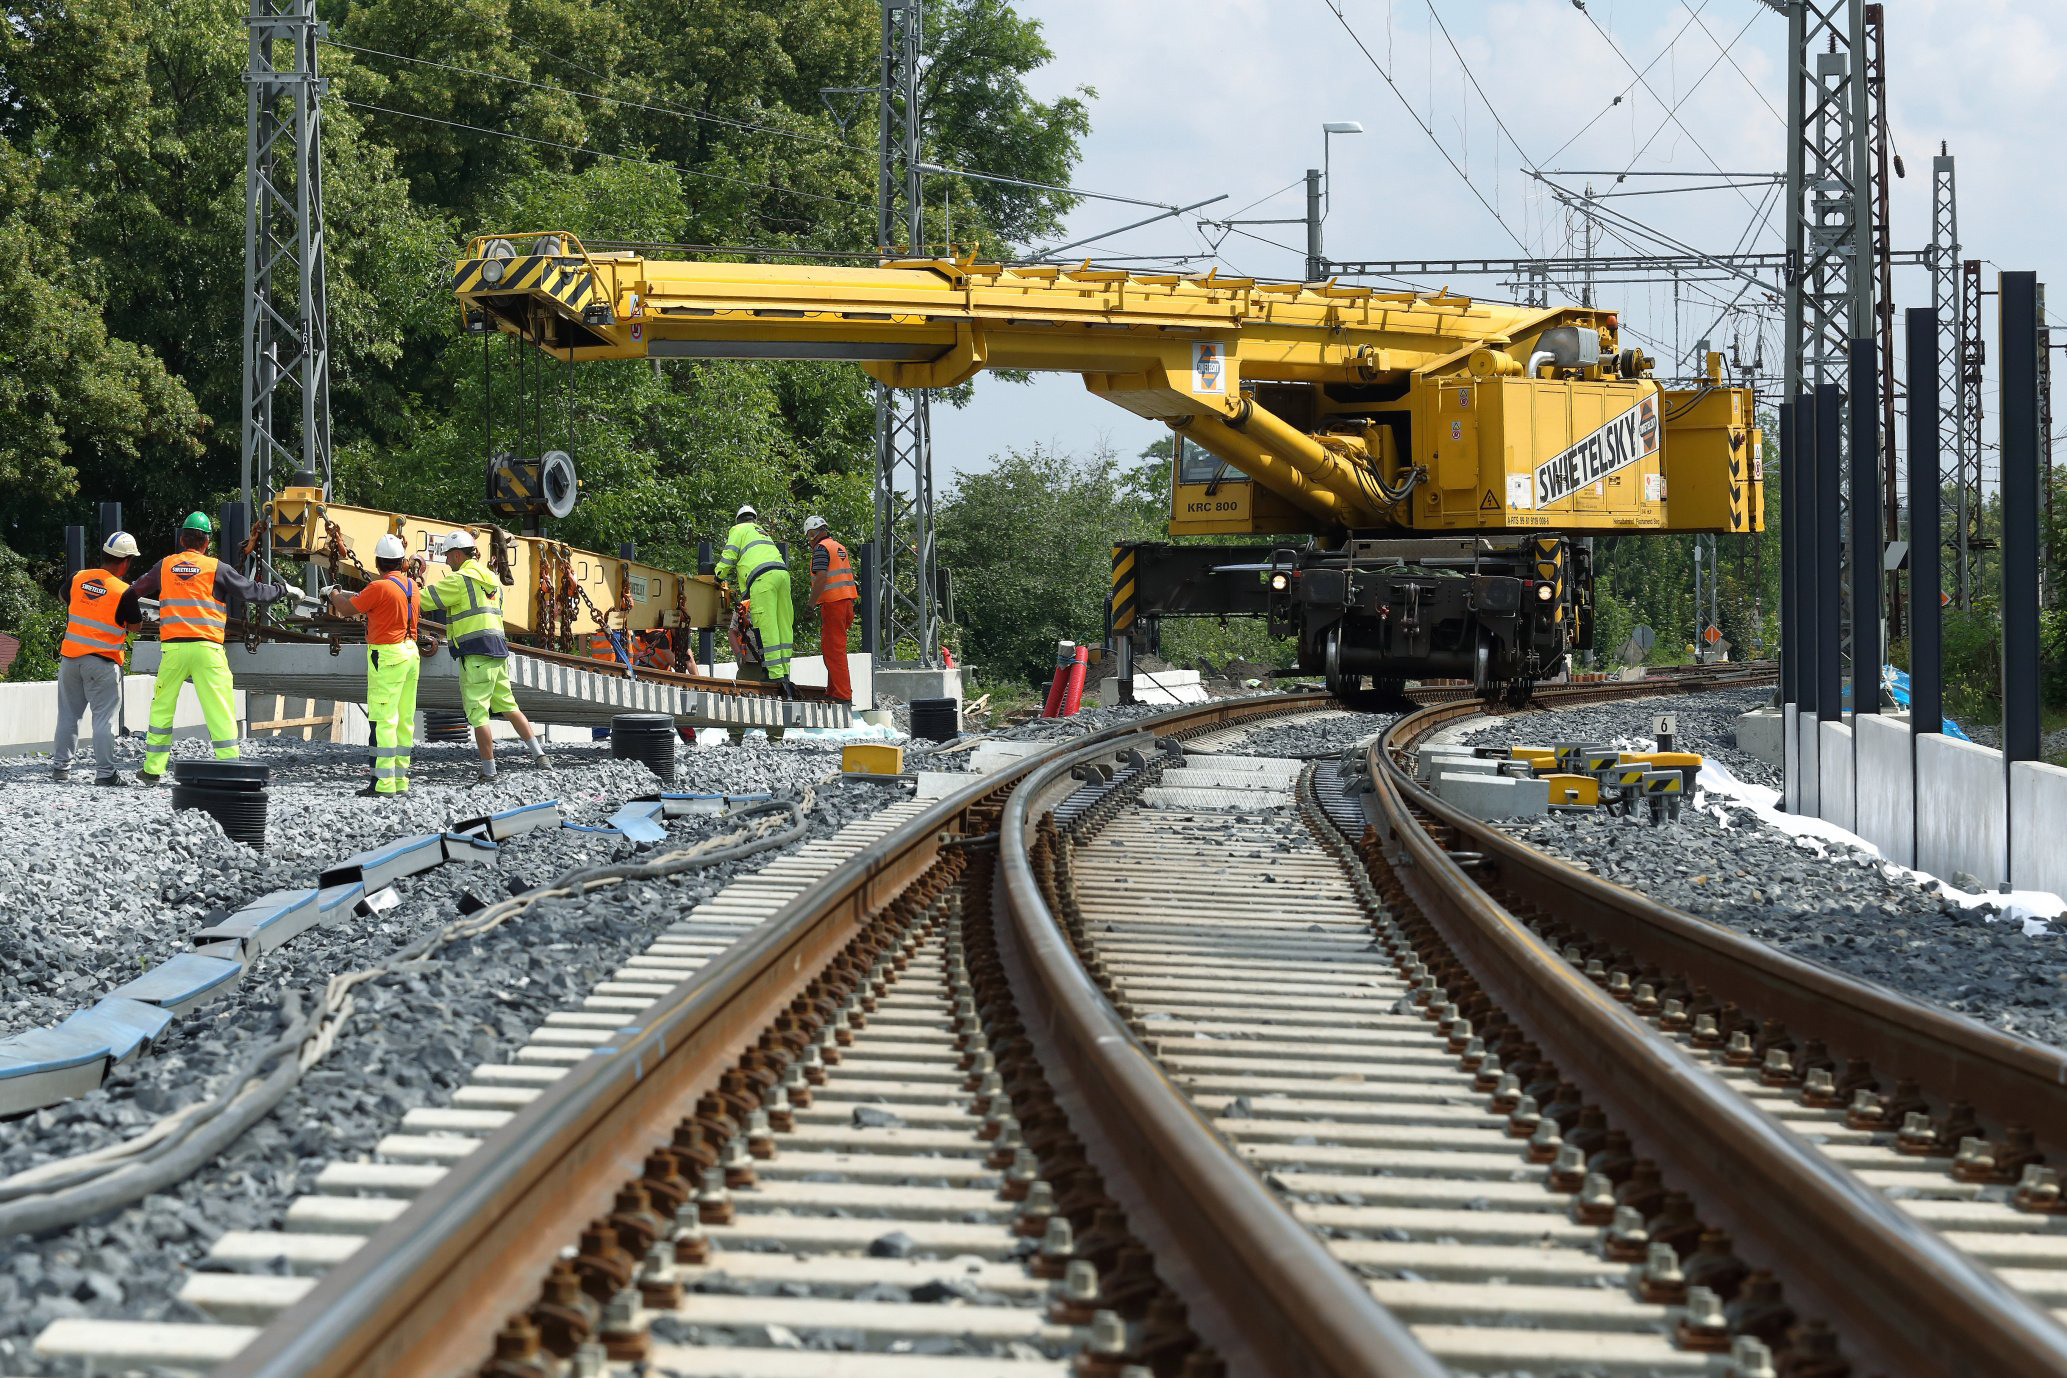 Obnova železniční stanice, Čelákovice - Railway construction